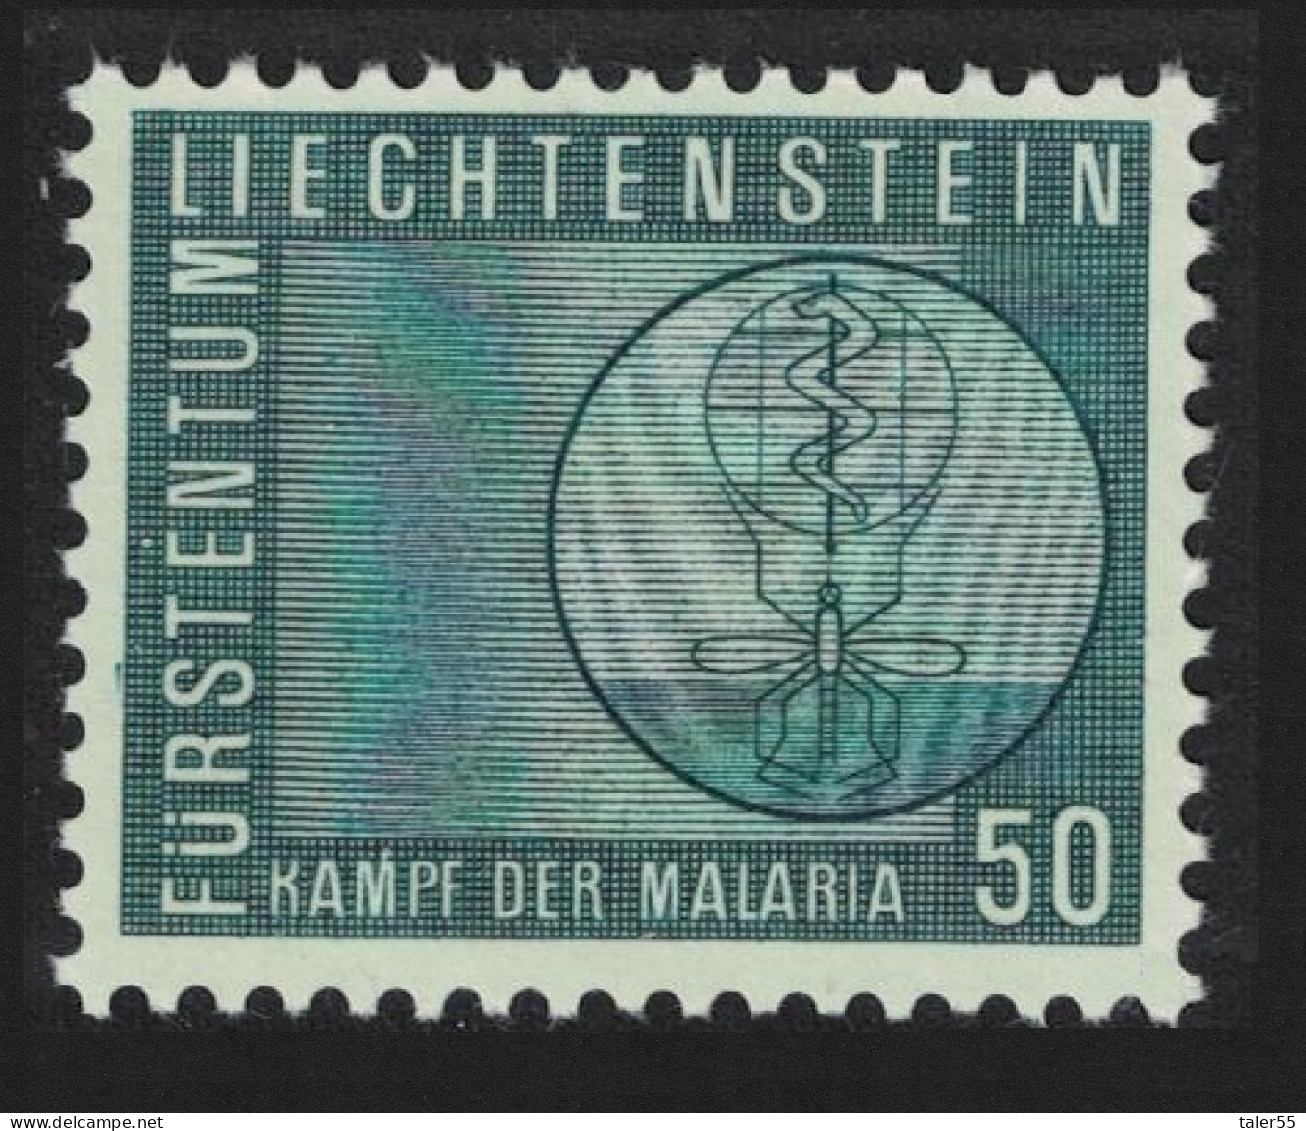 Liechtenstein Malaria Eradication 1962 MNH SG#414 - Unused Stamps